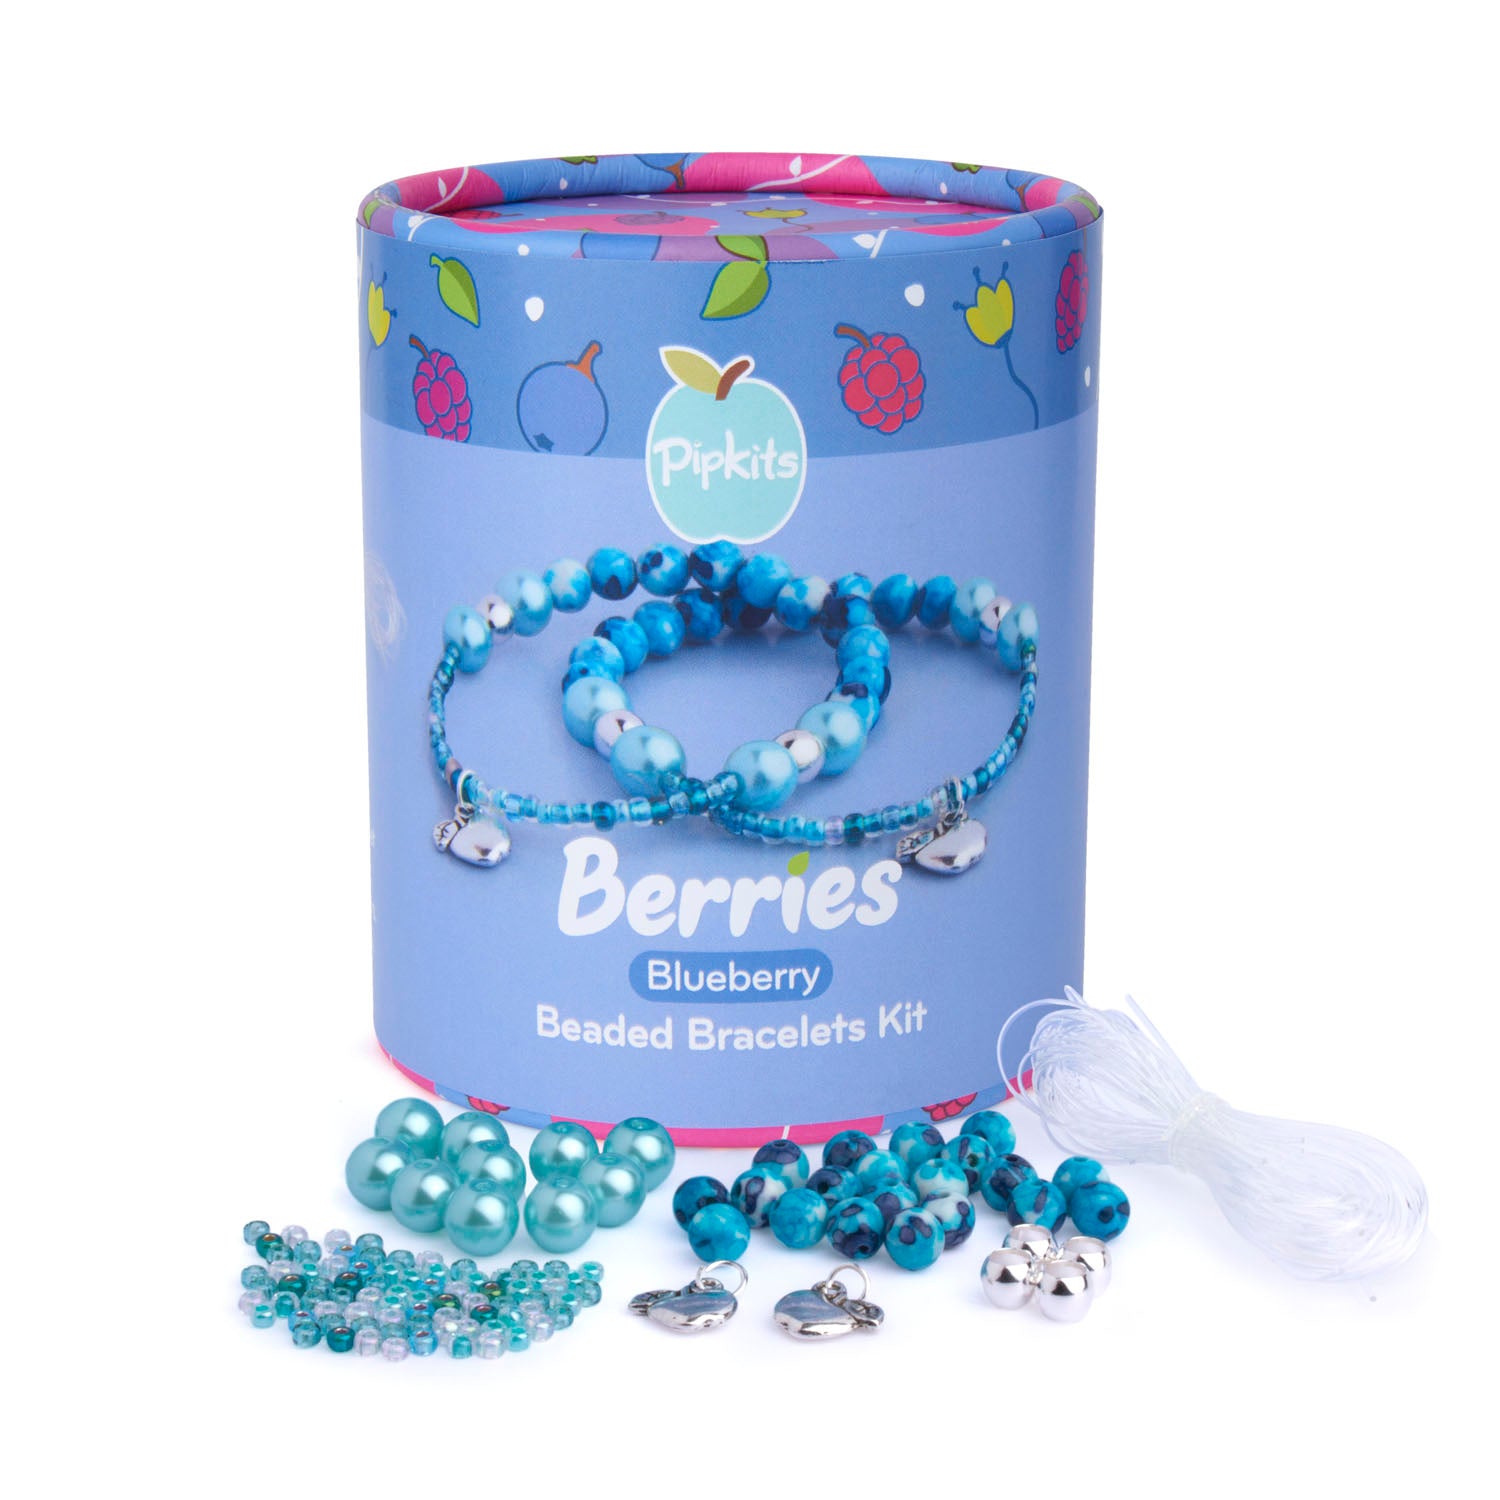 Blueberry Berries Beaded Bracelet Kit (Makes 2) – Pipkits